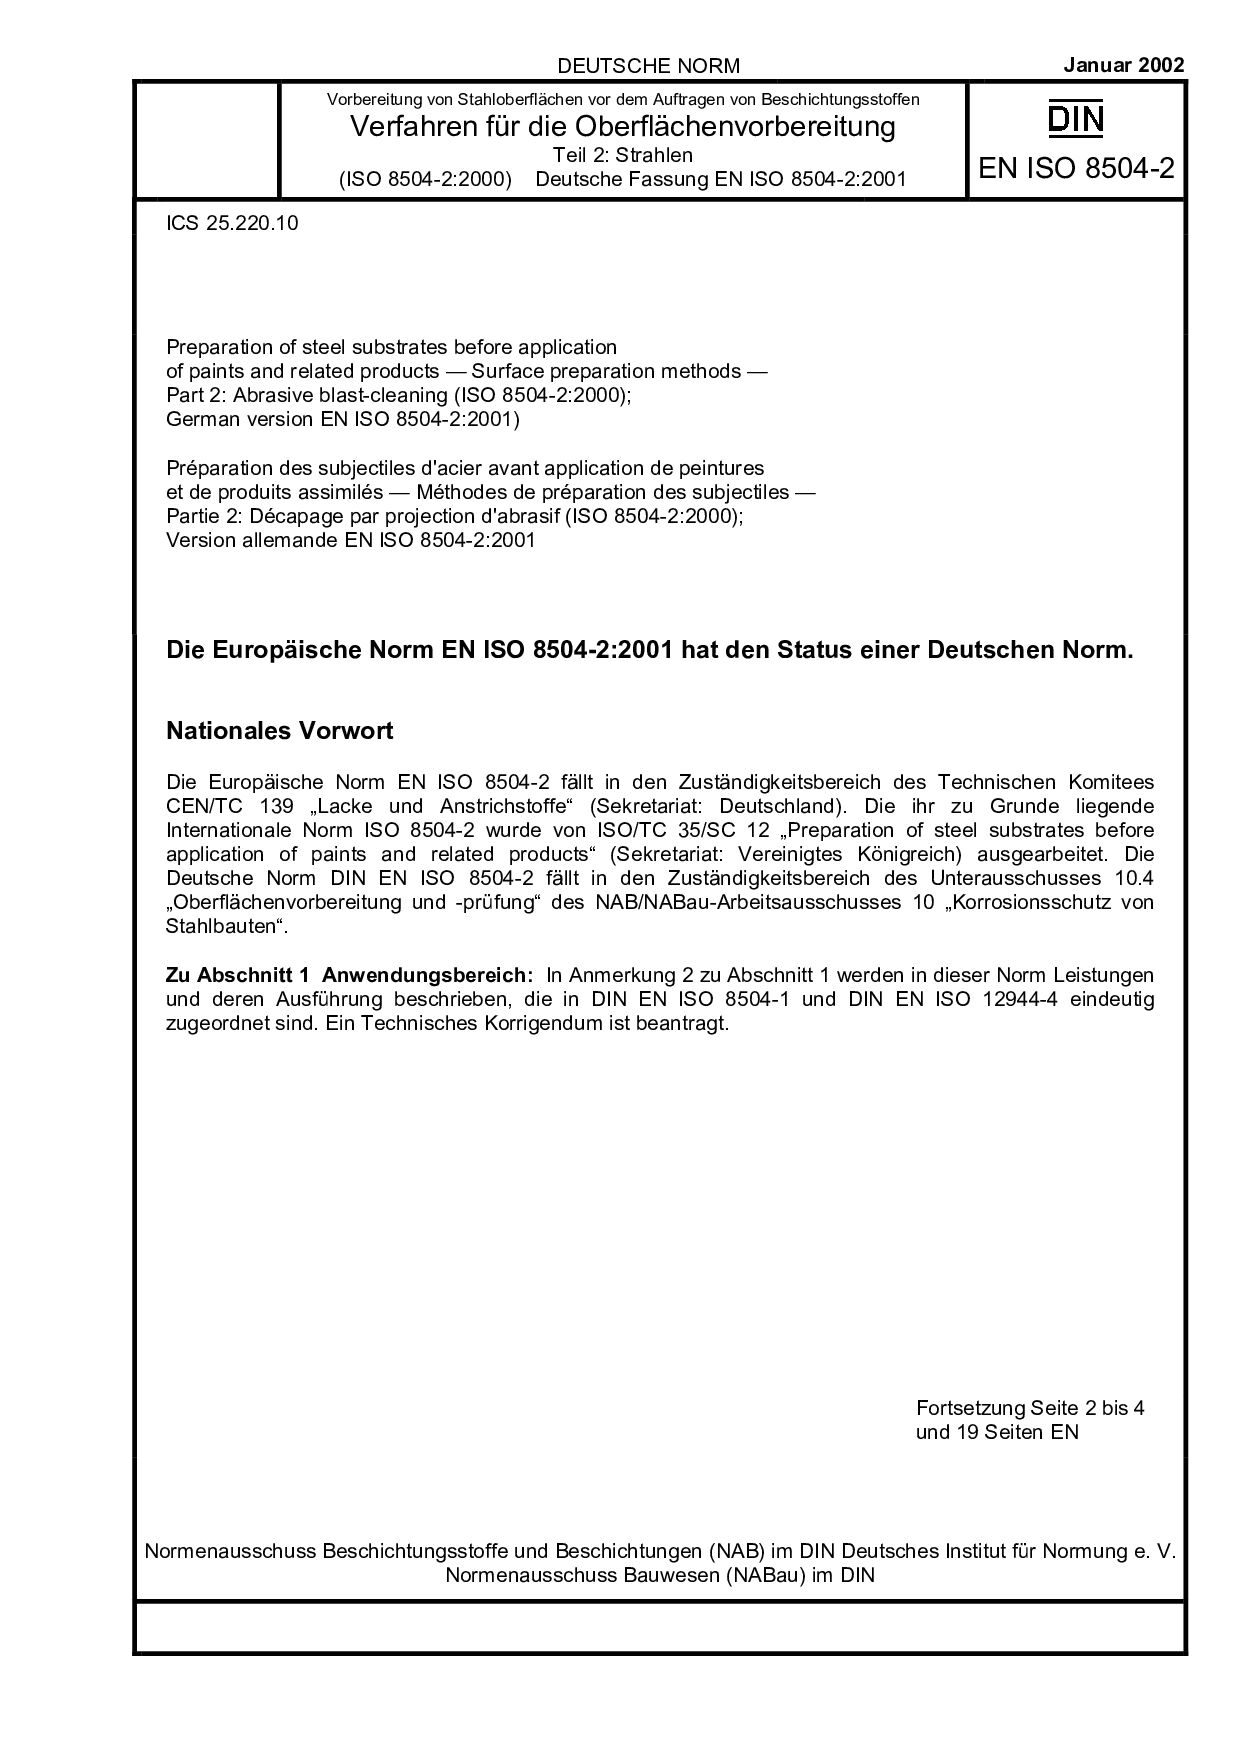 DIN EN ISO 8504-2:2002